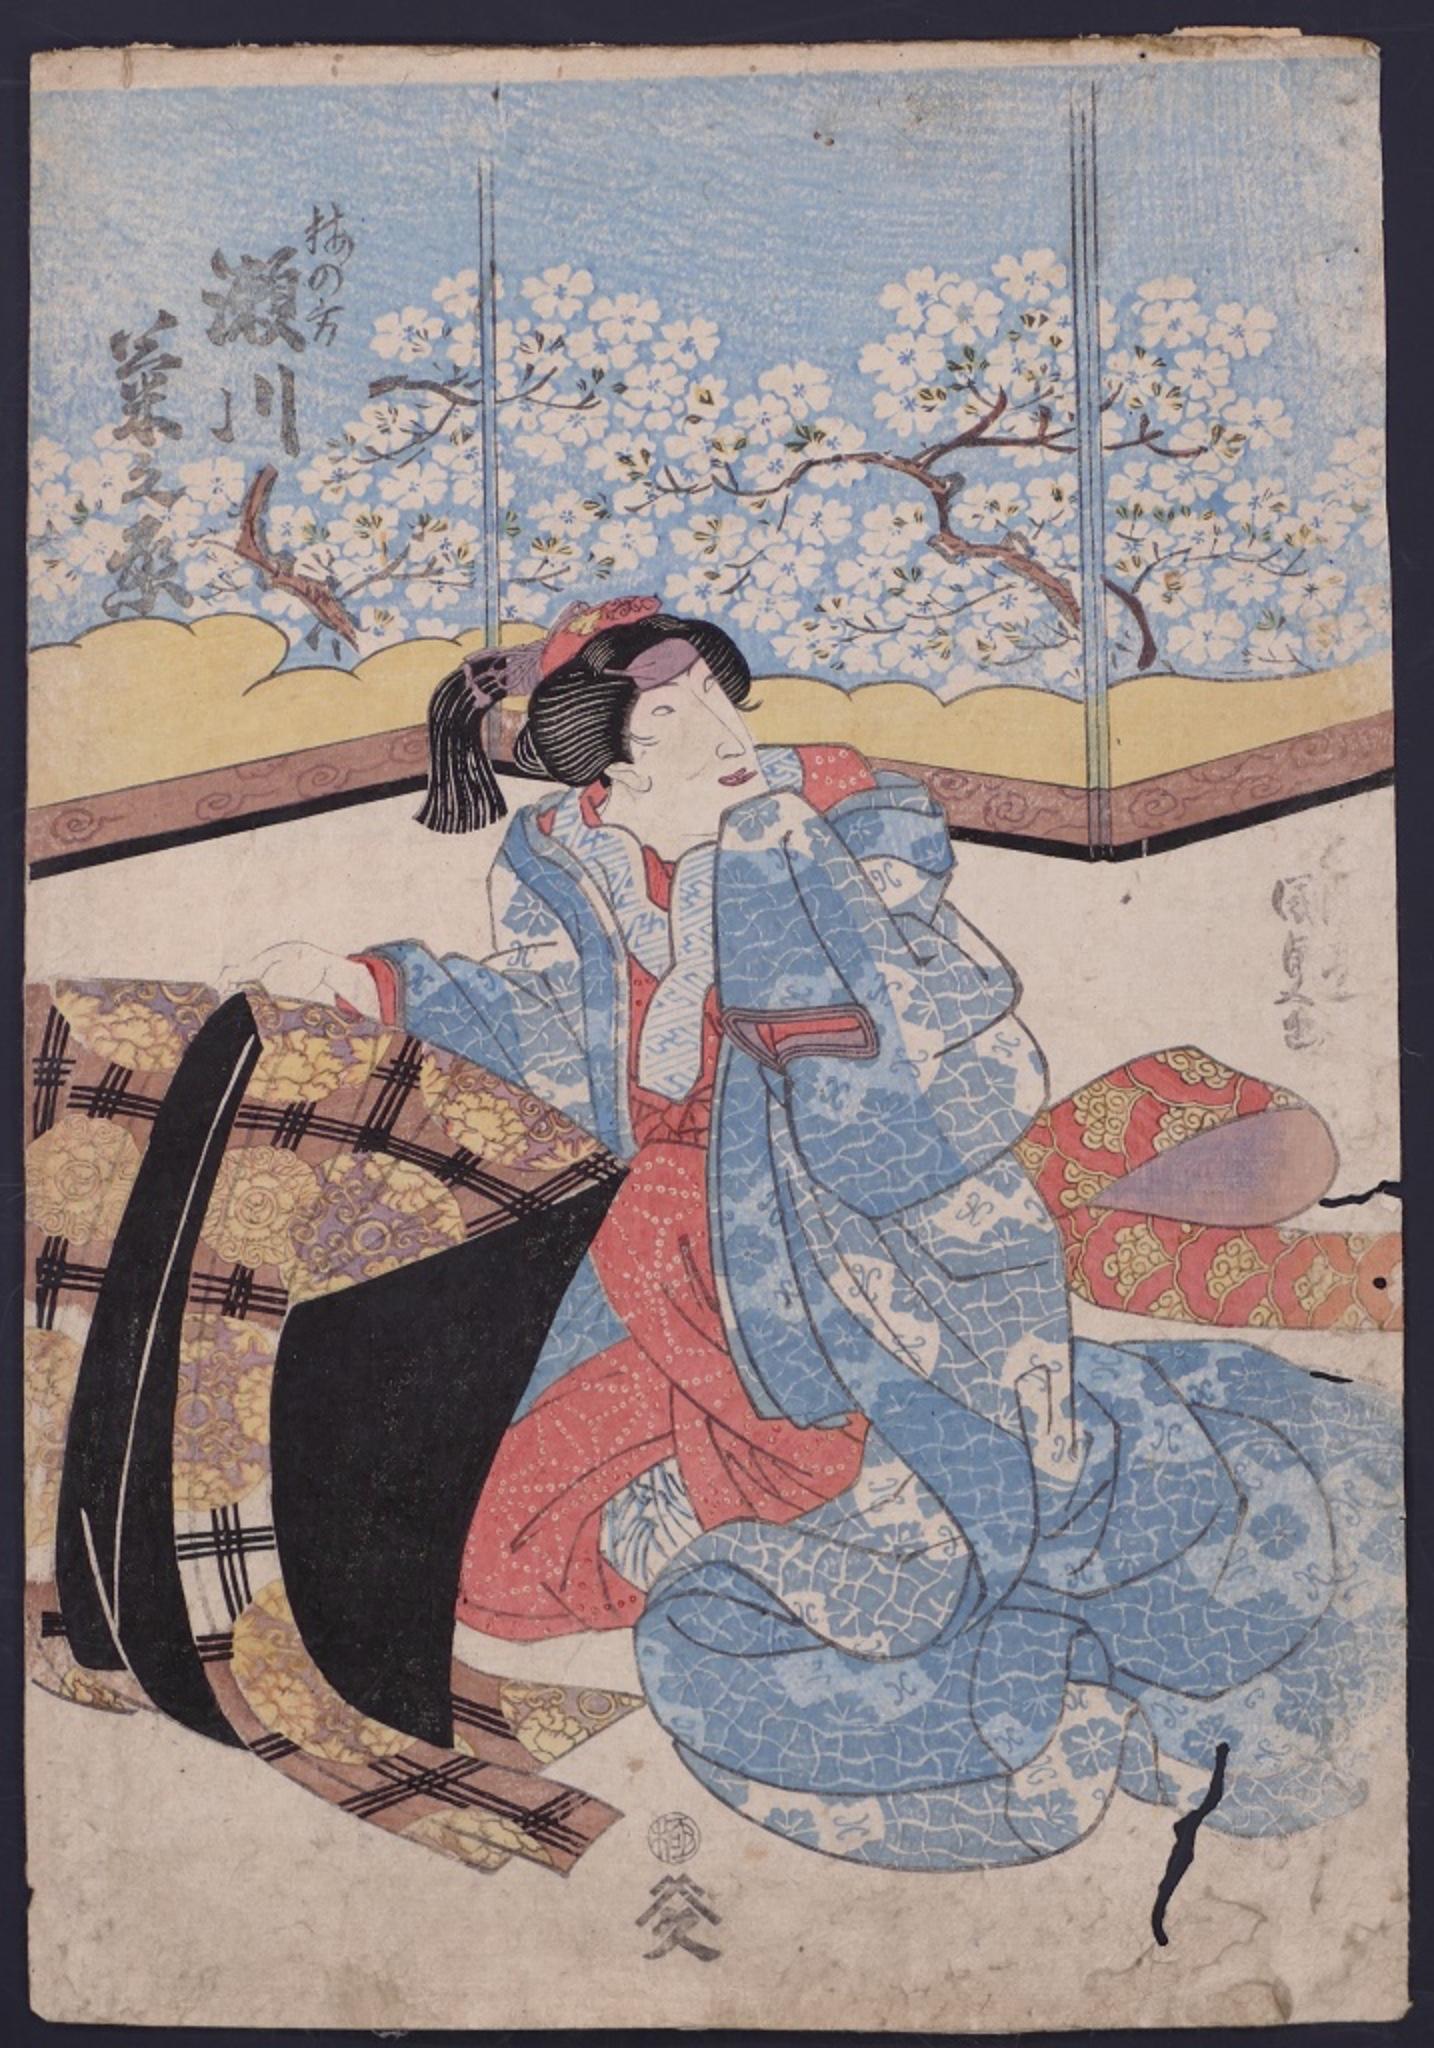 Scène de théâtre Kabuki est une gravure sur bois en couleur sur papier, réalisée par Utagawa Toyokuni II vers 1810 ca.

Cette belle estampe ukiyo-e représente une actrice agenouillée, plus précisément une geisha, vêtue d'un kimono précieux et